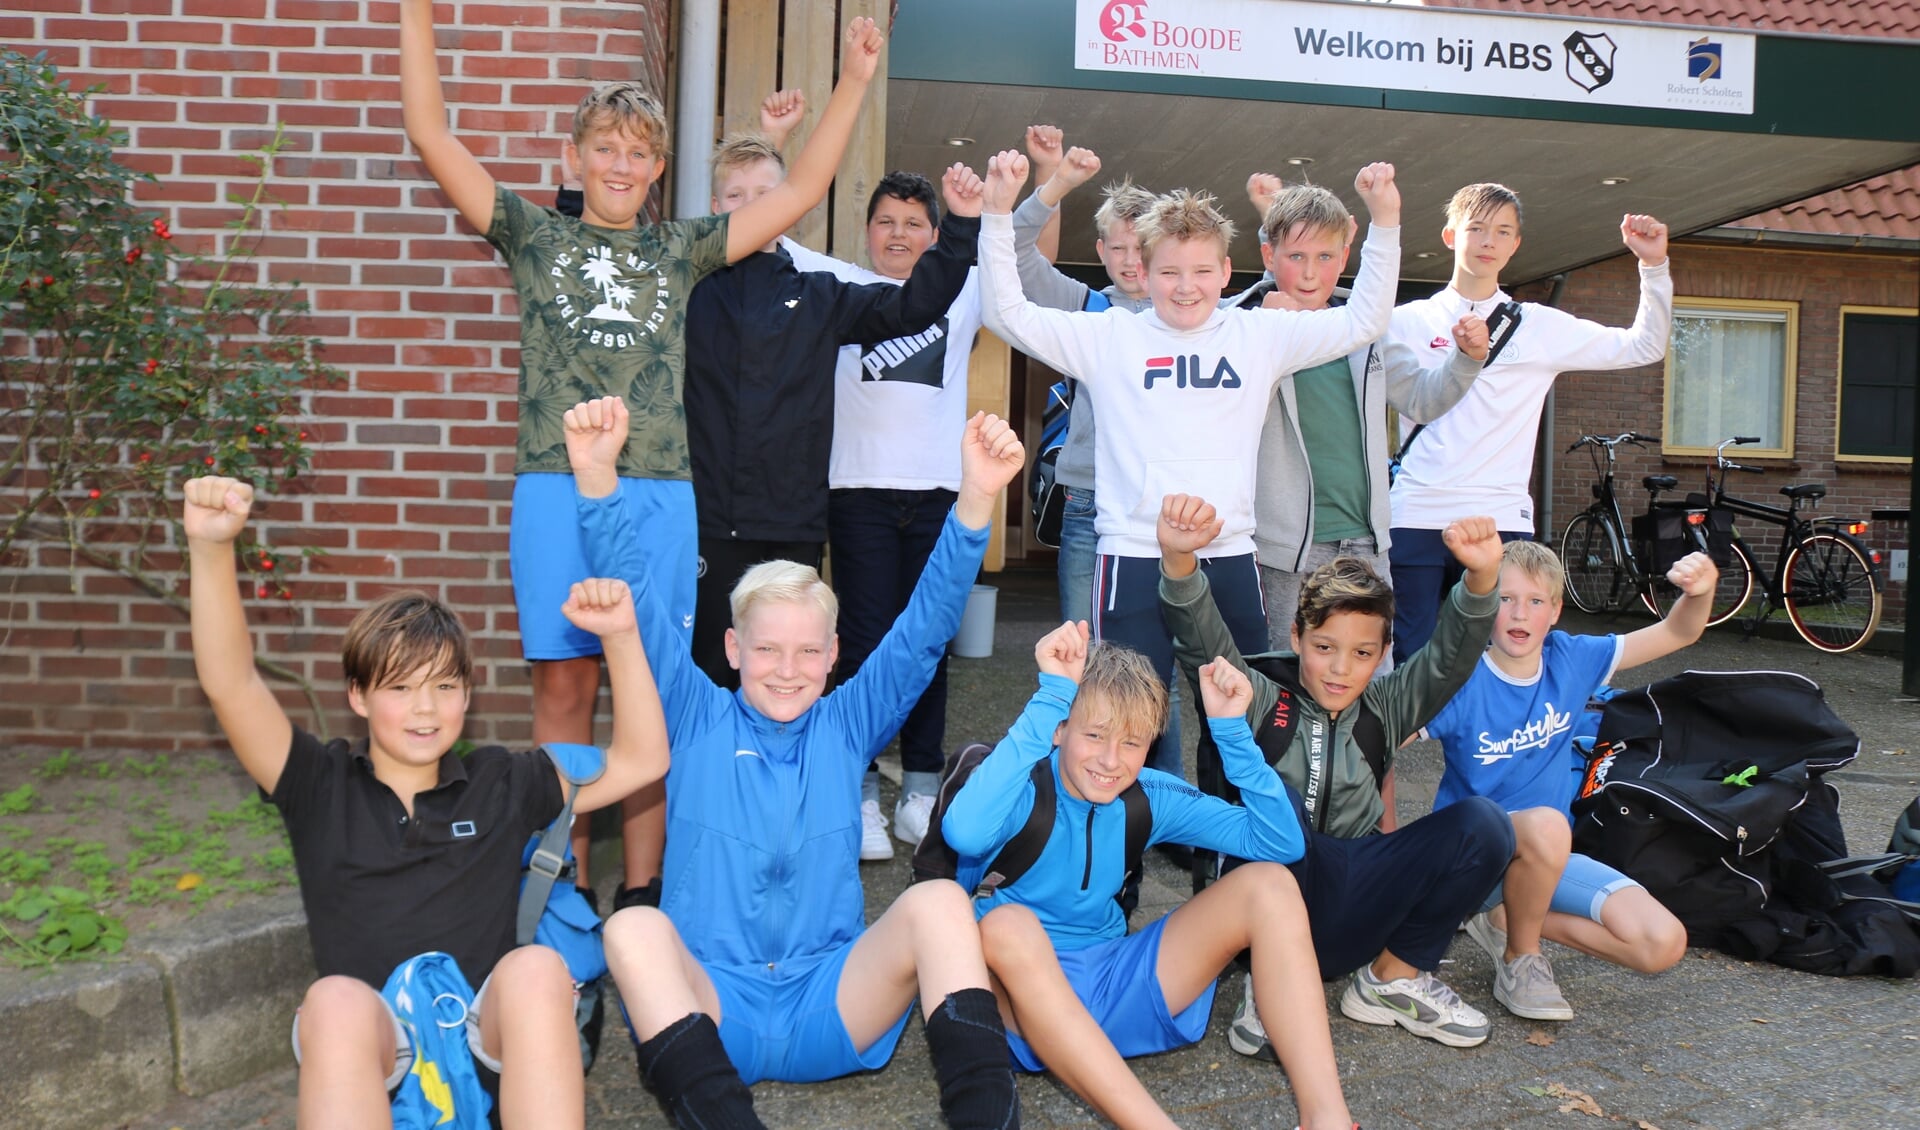 Uitbundig tevreden was het team over het behaalde resultaat. Foto: Arjen Dieperink